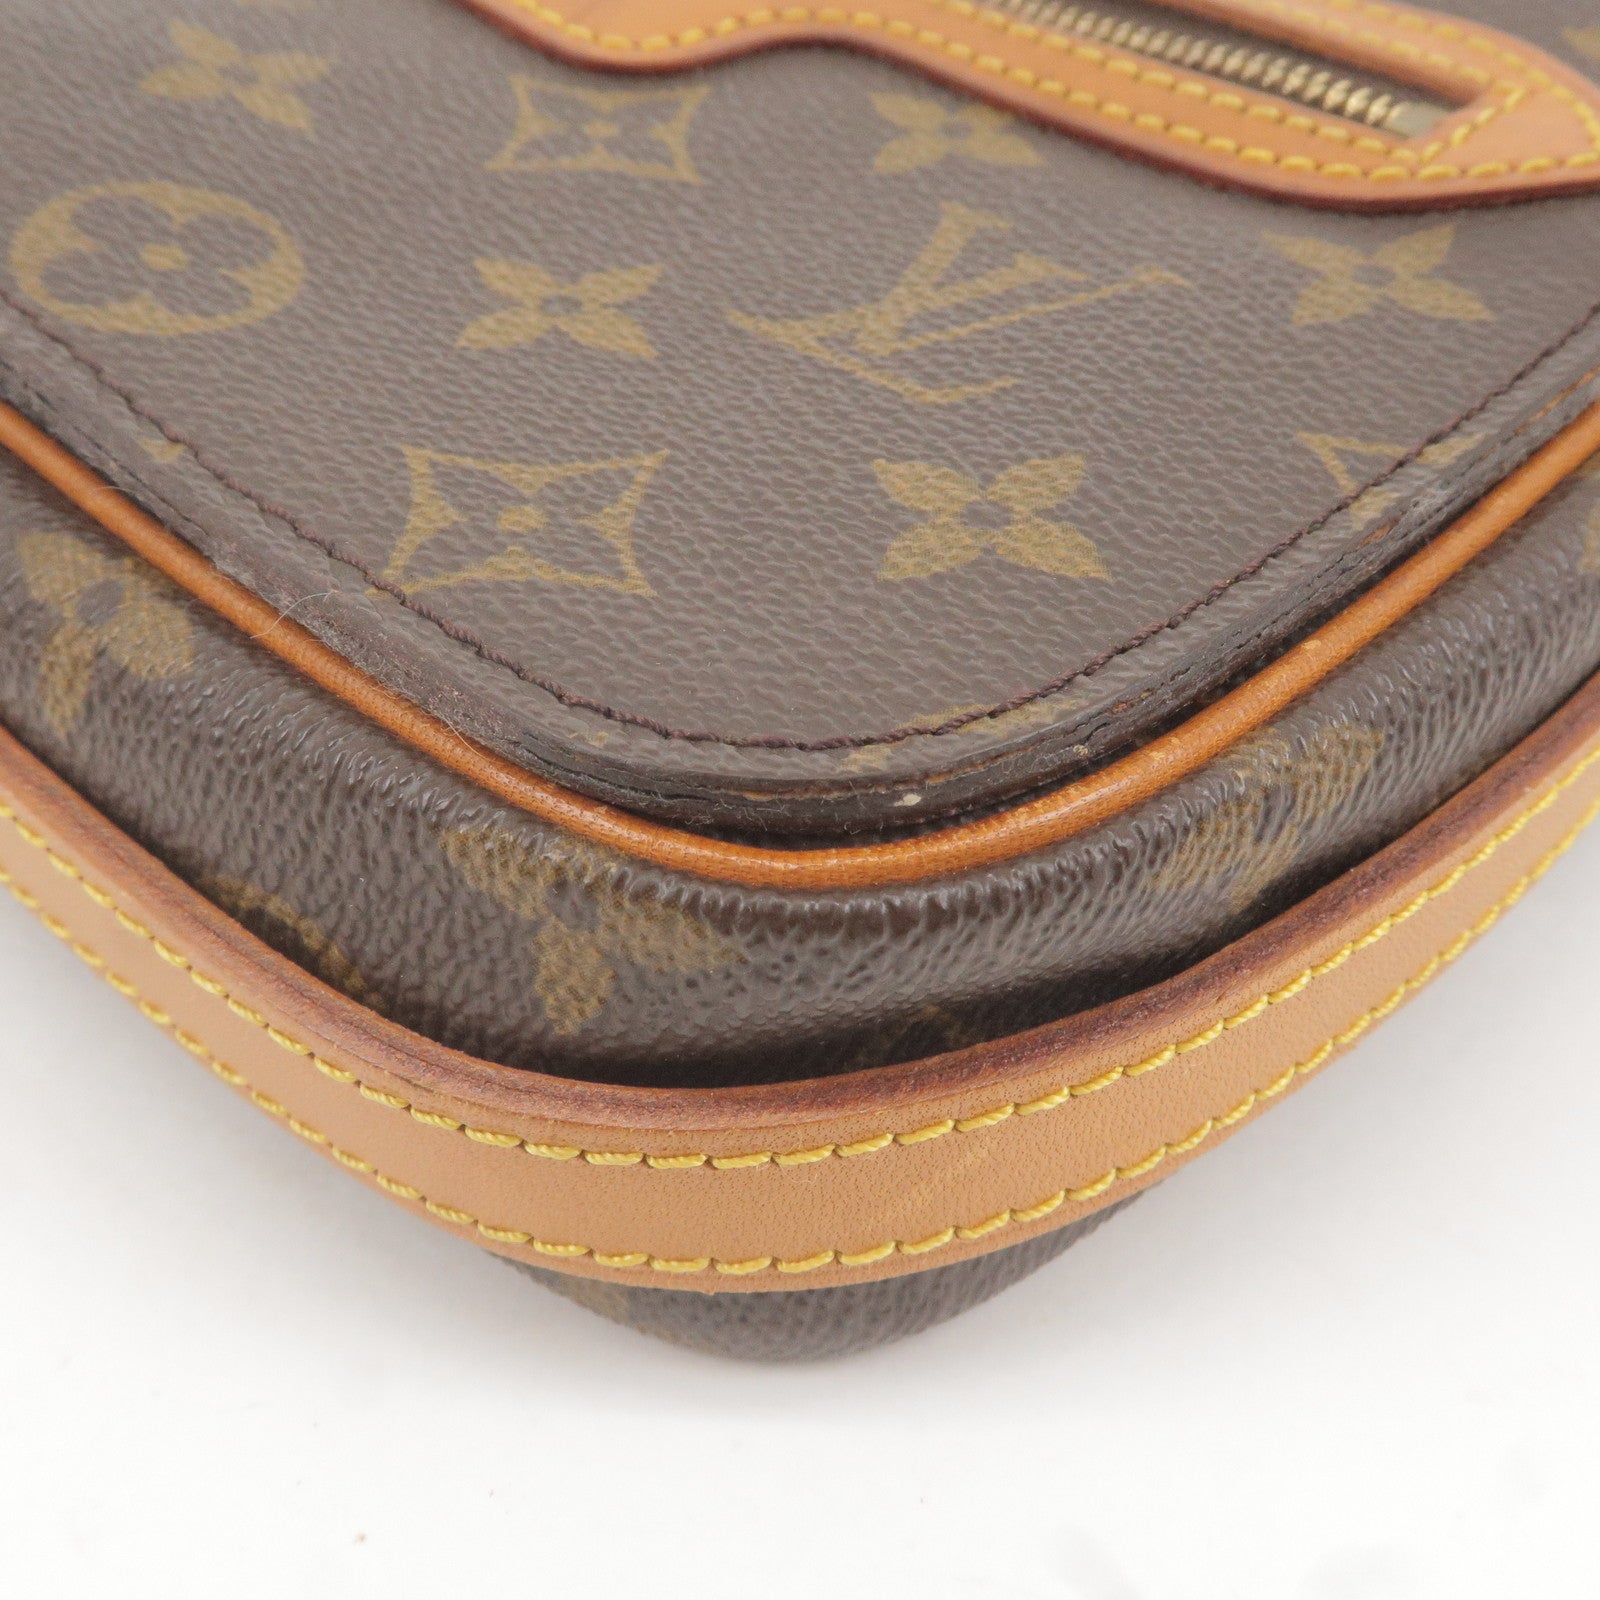 3ac2918] Auth Louis Vuitton Shoulder Bag Monogram Saint-Germain M51210